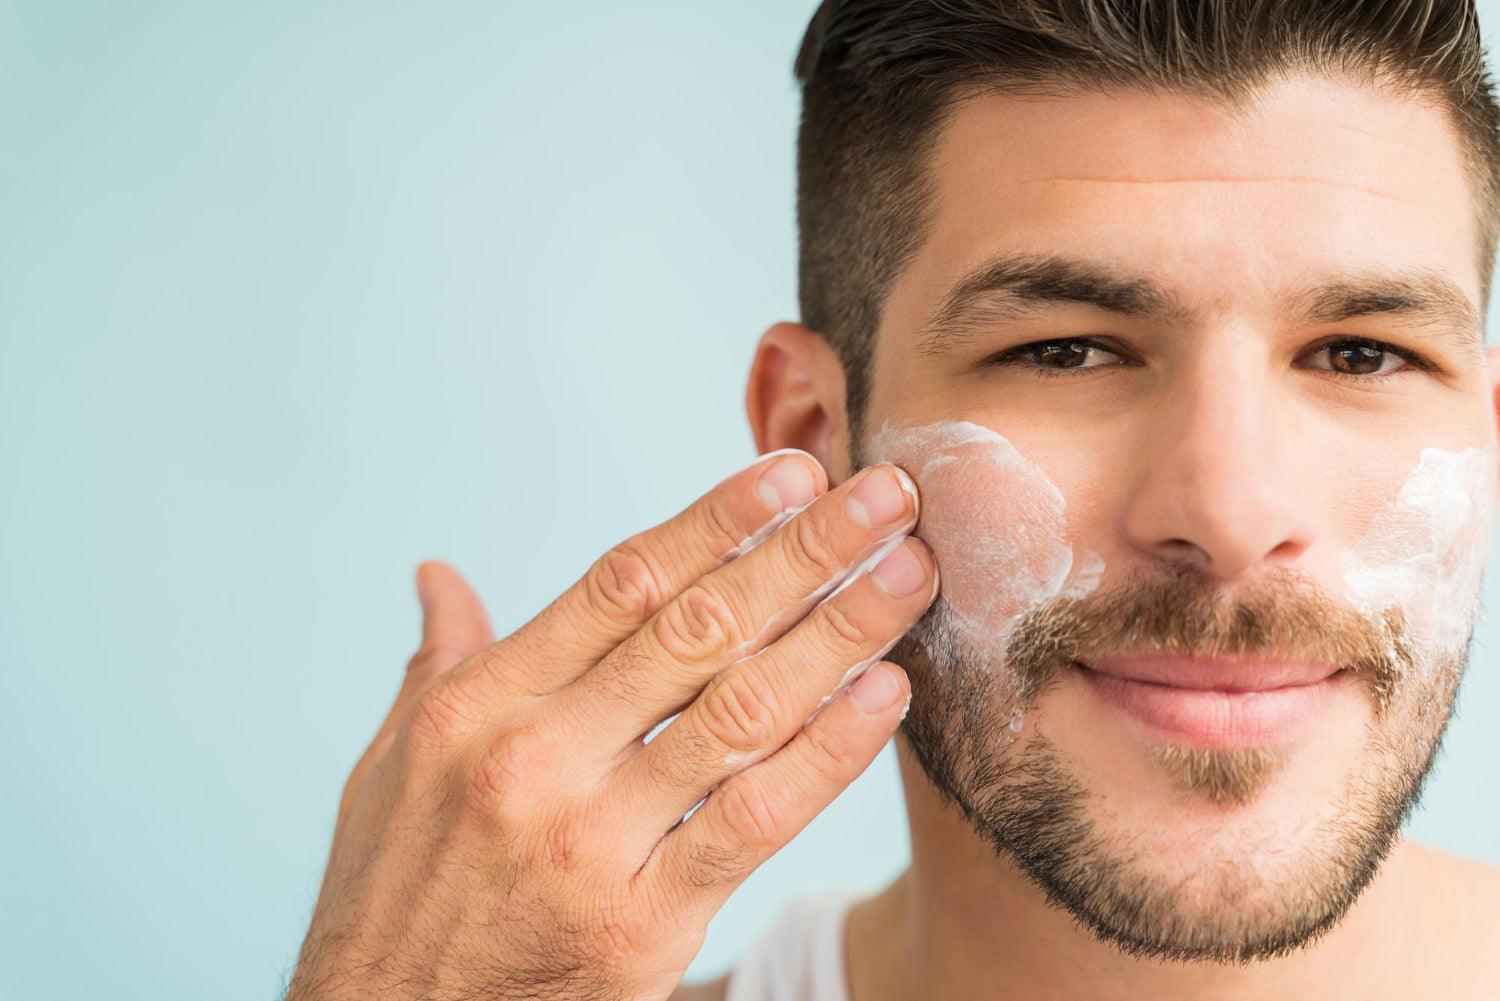 Men's Skincare